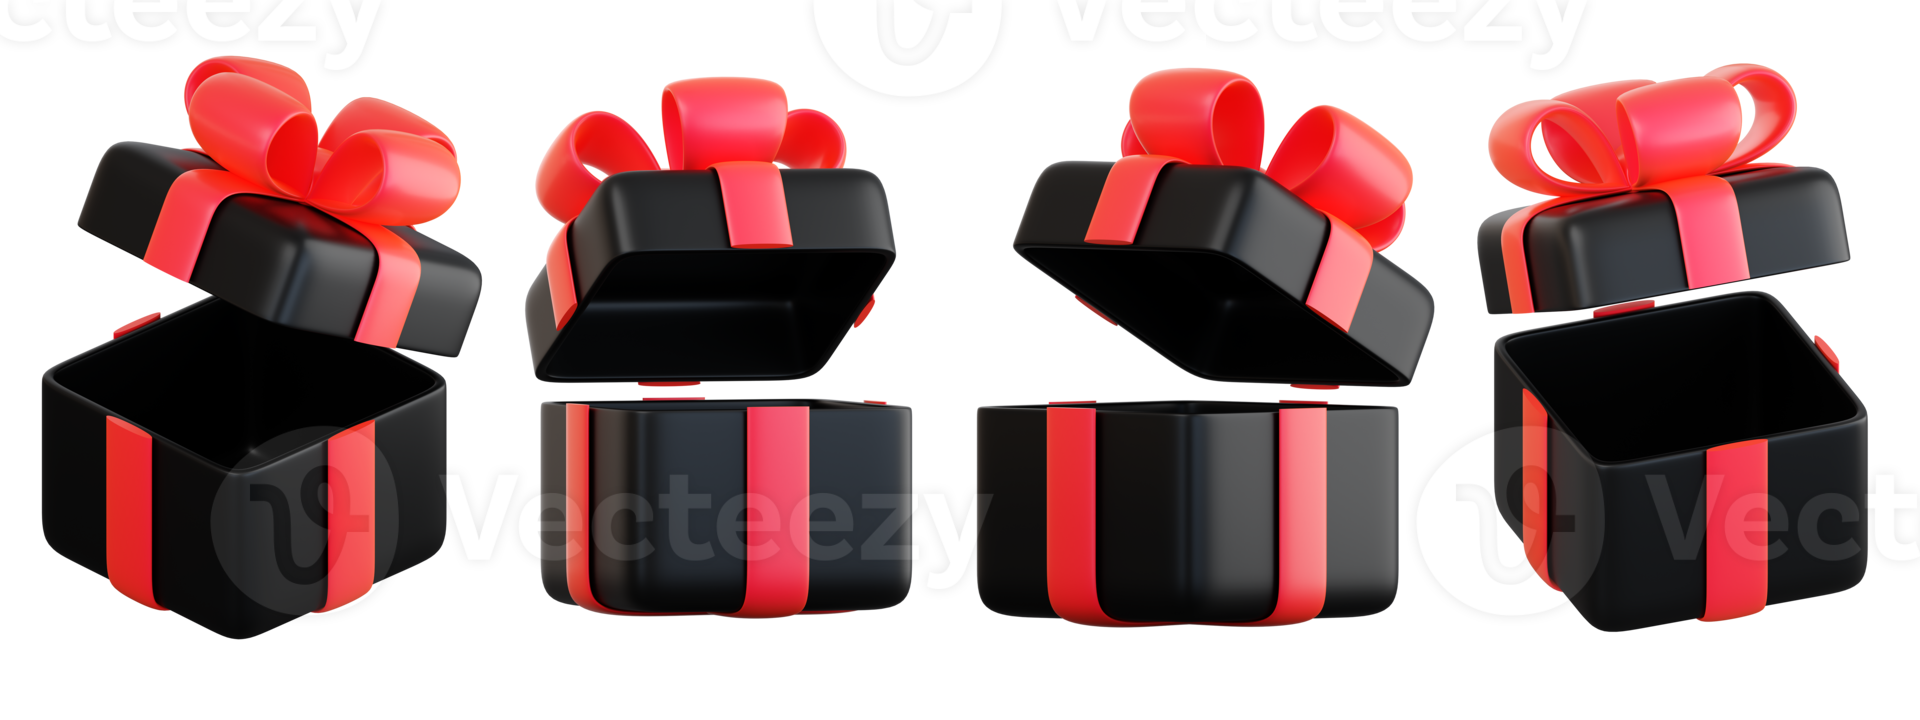 realistisch zwart geschenk doos reeks met rood lint boog. concept van abstract vakantie, verjaardag, Kerstmis of zwart vrijdag Cadeau of verrassing. 3d hoog kwaliteit geïsoleerd geven png